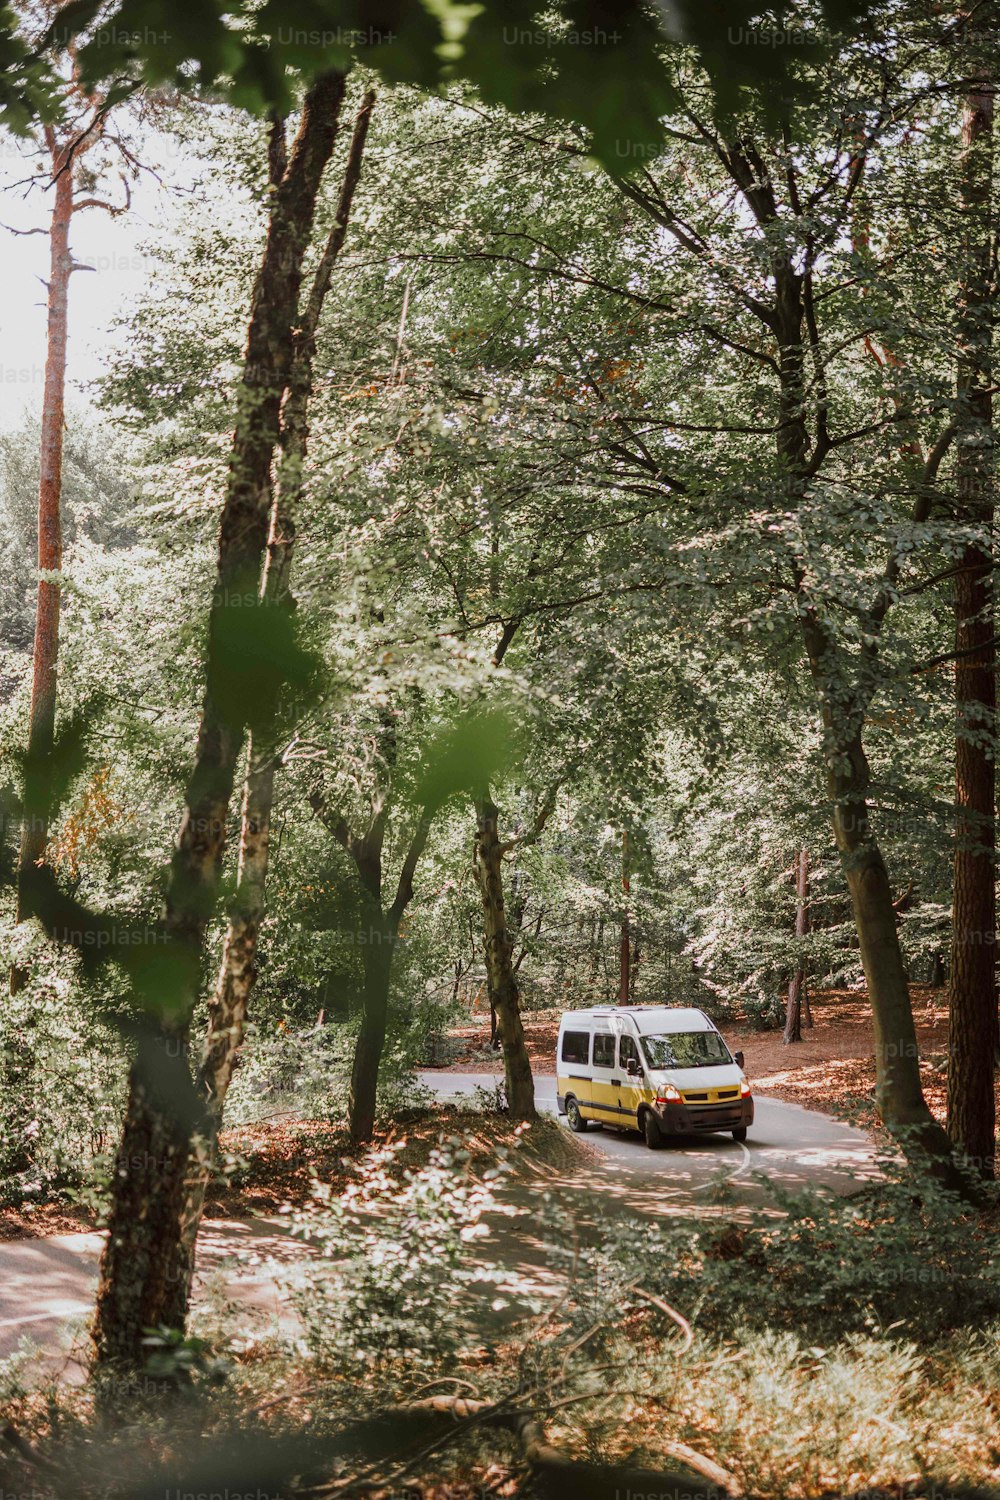 Una furgoneta está estacionada en medio del bosque